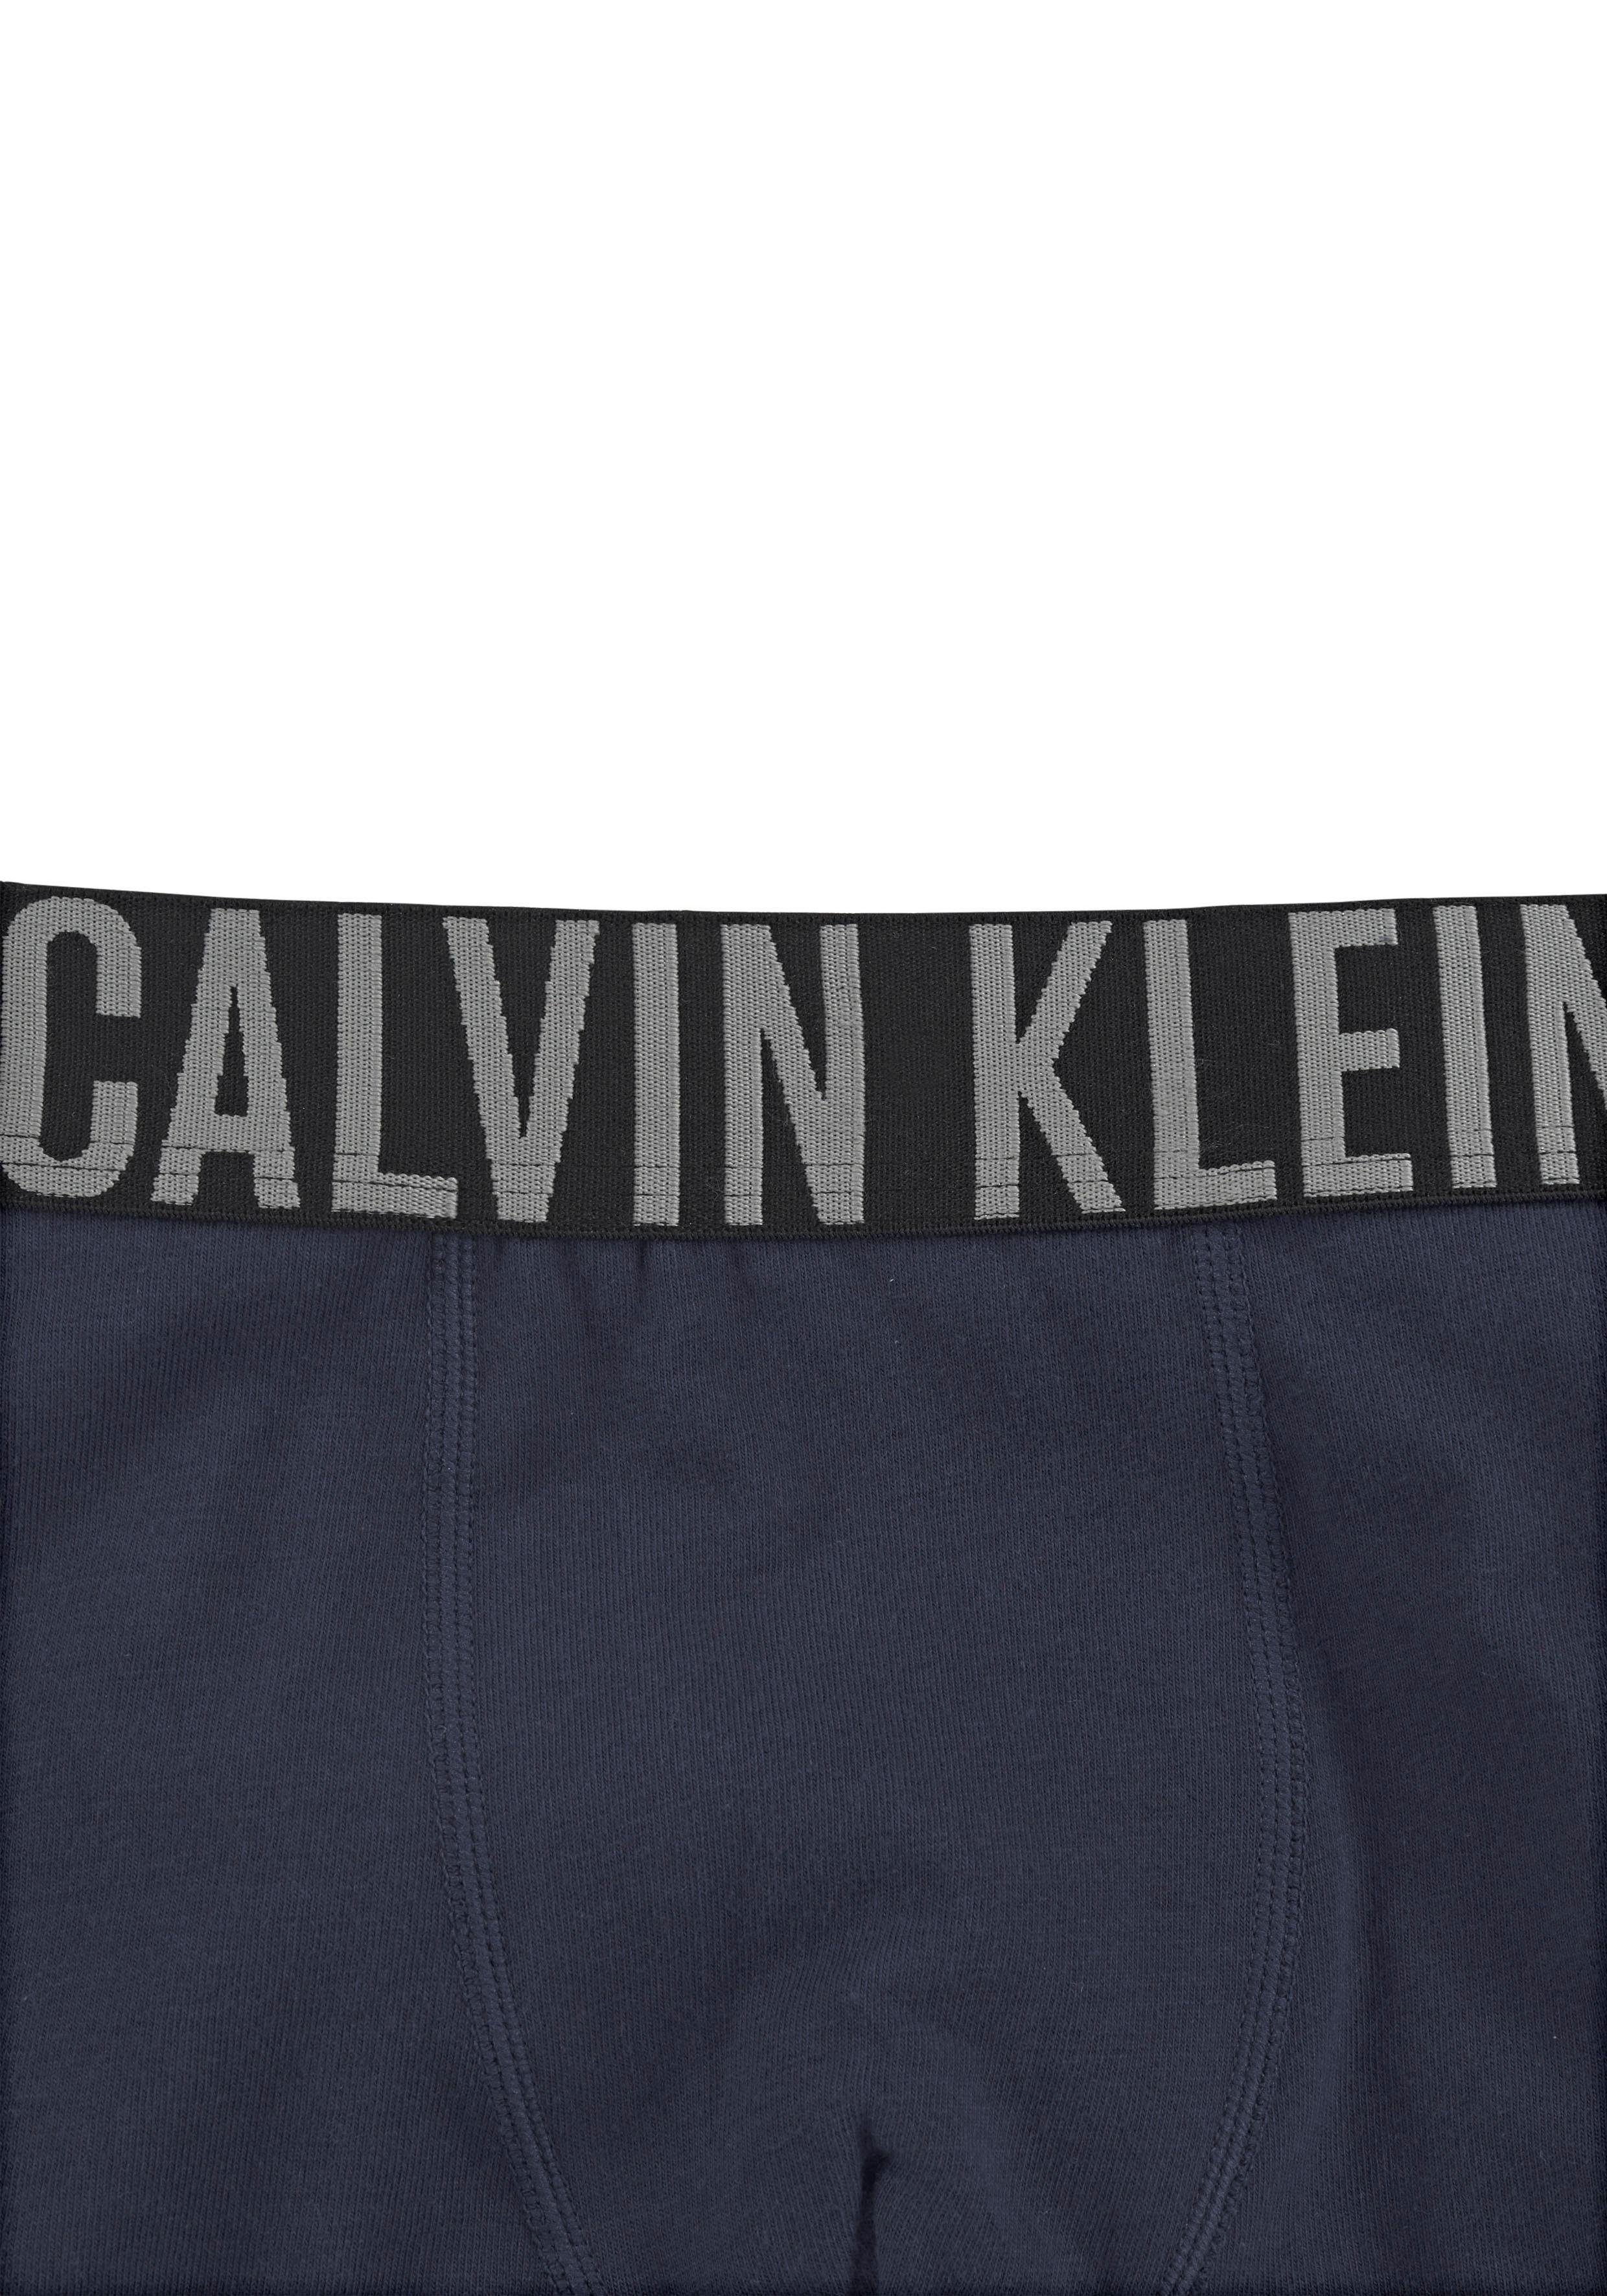 Calvin Klein Underwear (2-St) Power Kinder Trunk Intenese grau-meliert, navy Junior Kids MiniMe